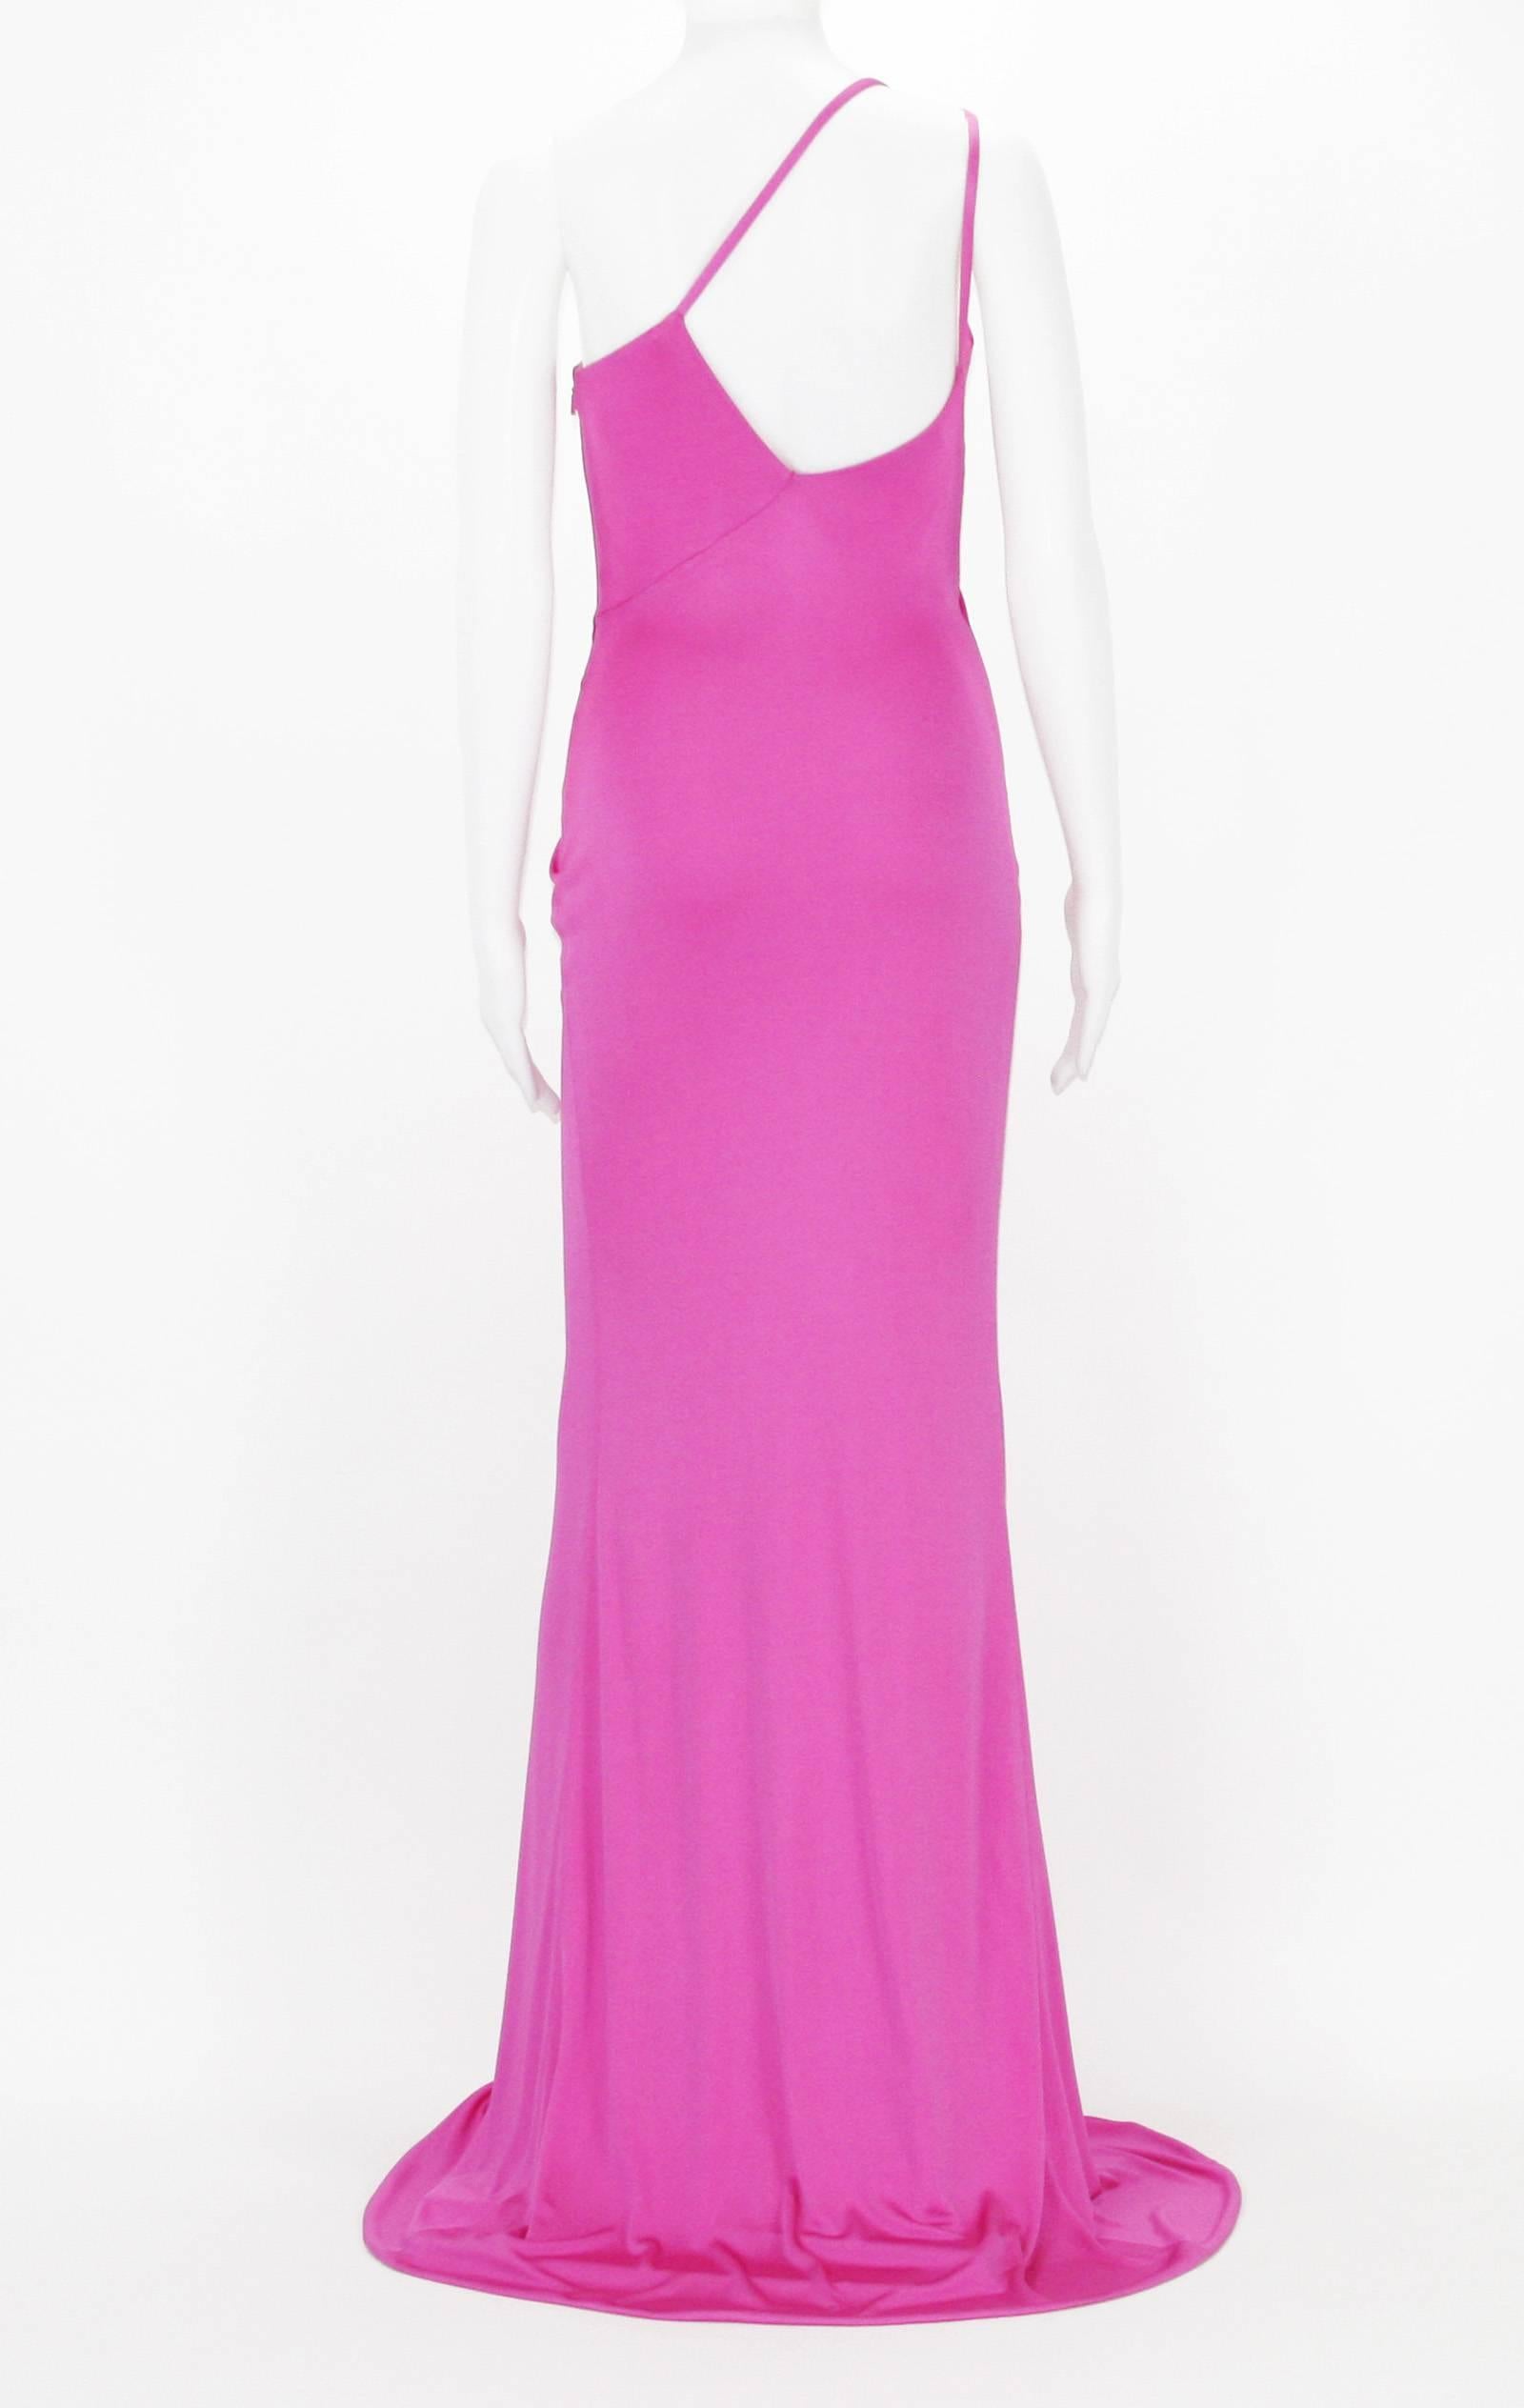 versace hot pink dress